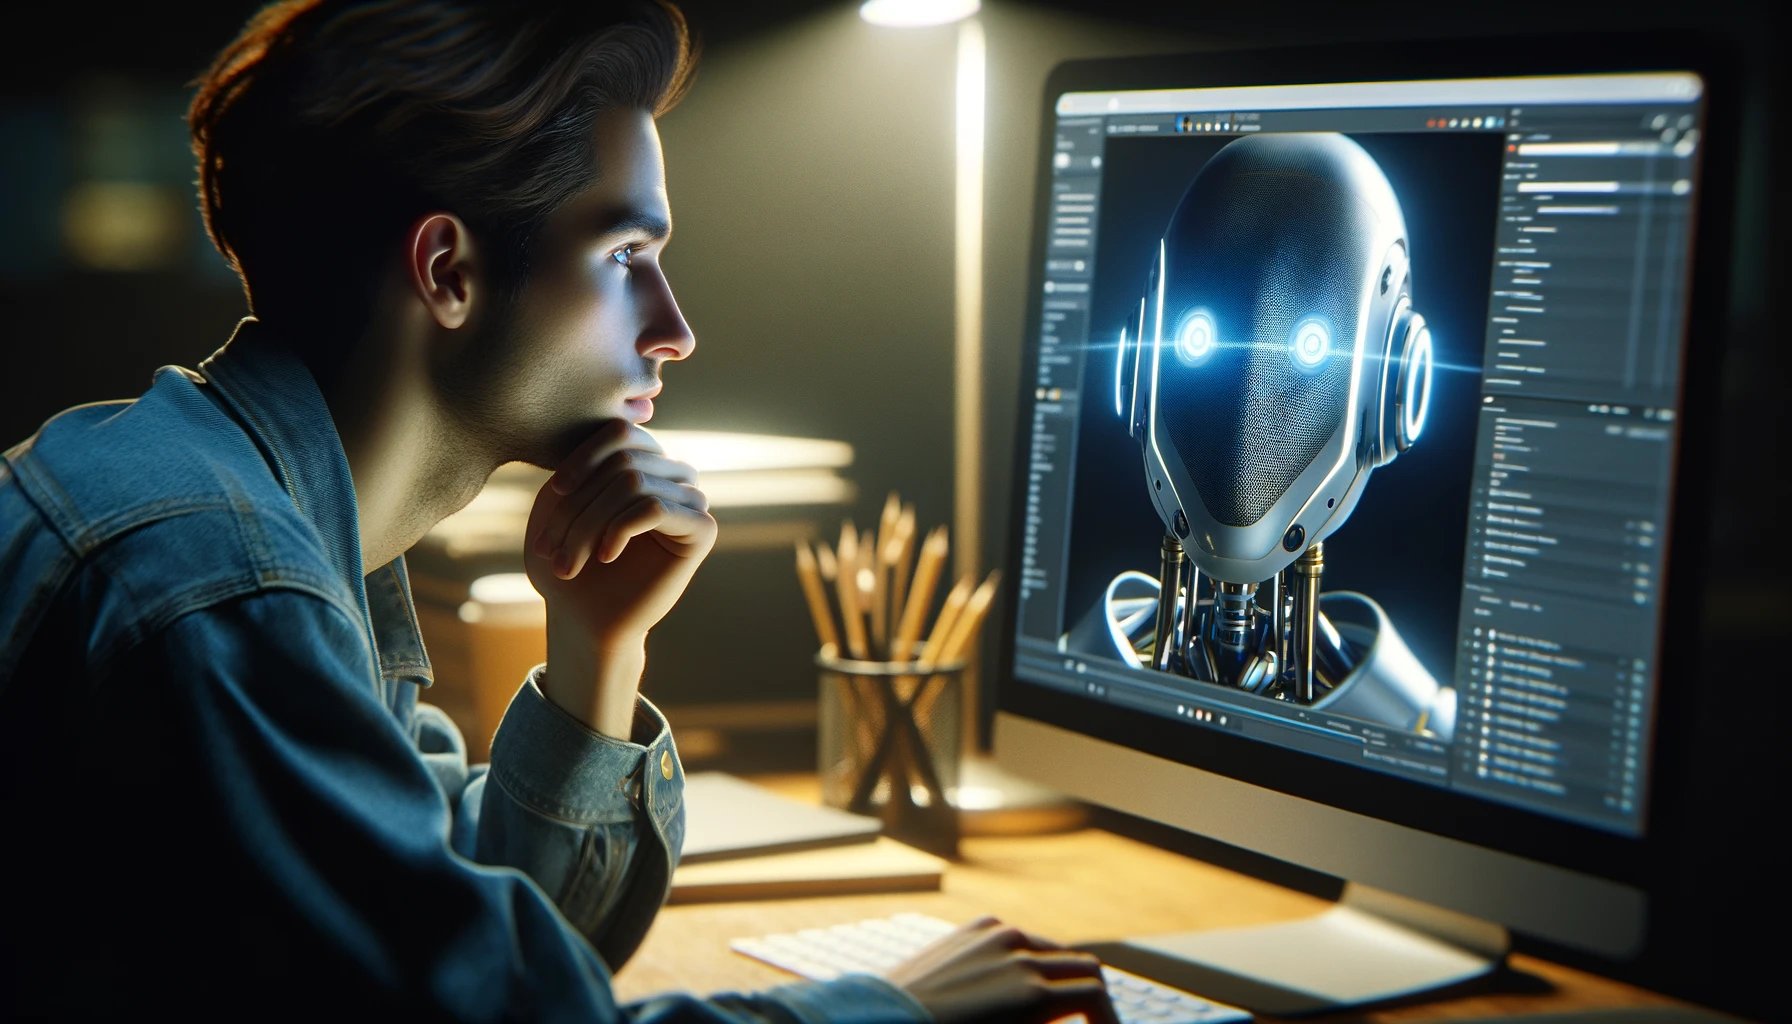 fotorealistische close-up afbeelding van een persoon die aan een bureau zit en direct naar een computerscherm kijkt, waarop een rob